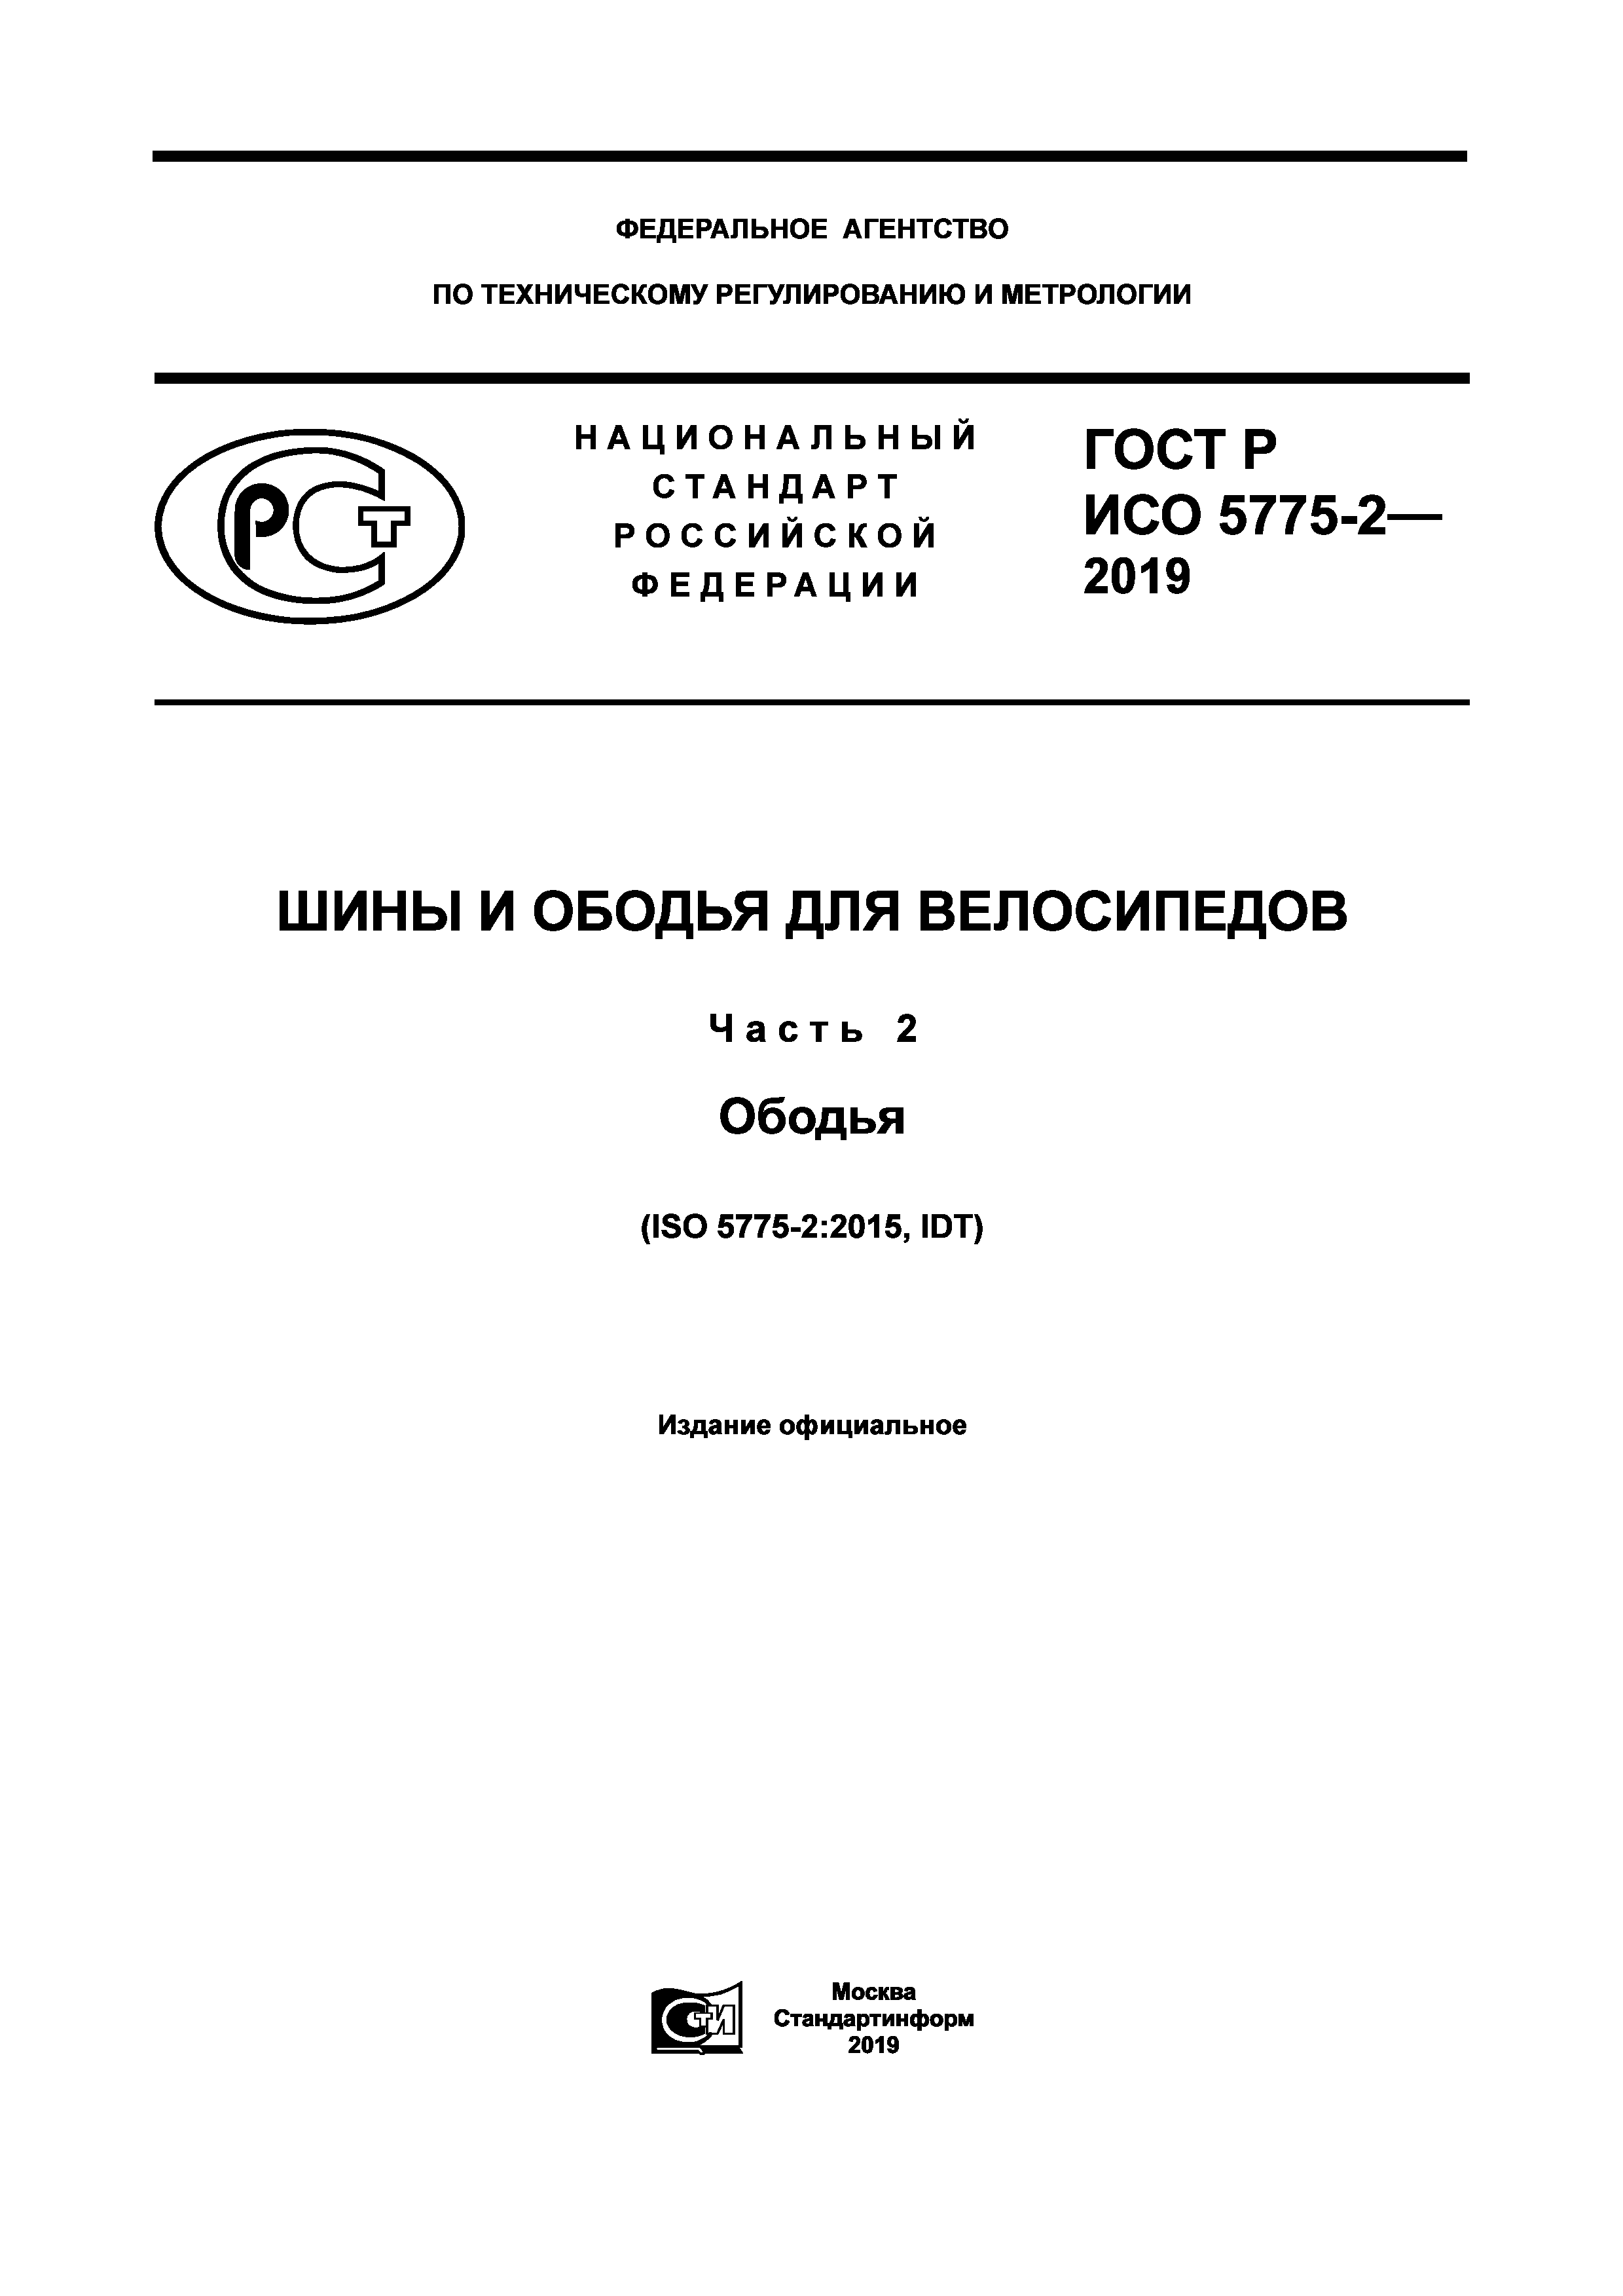 ГОСТ Р ИСО 5775-2-2019